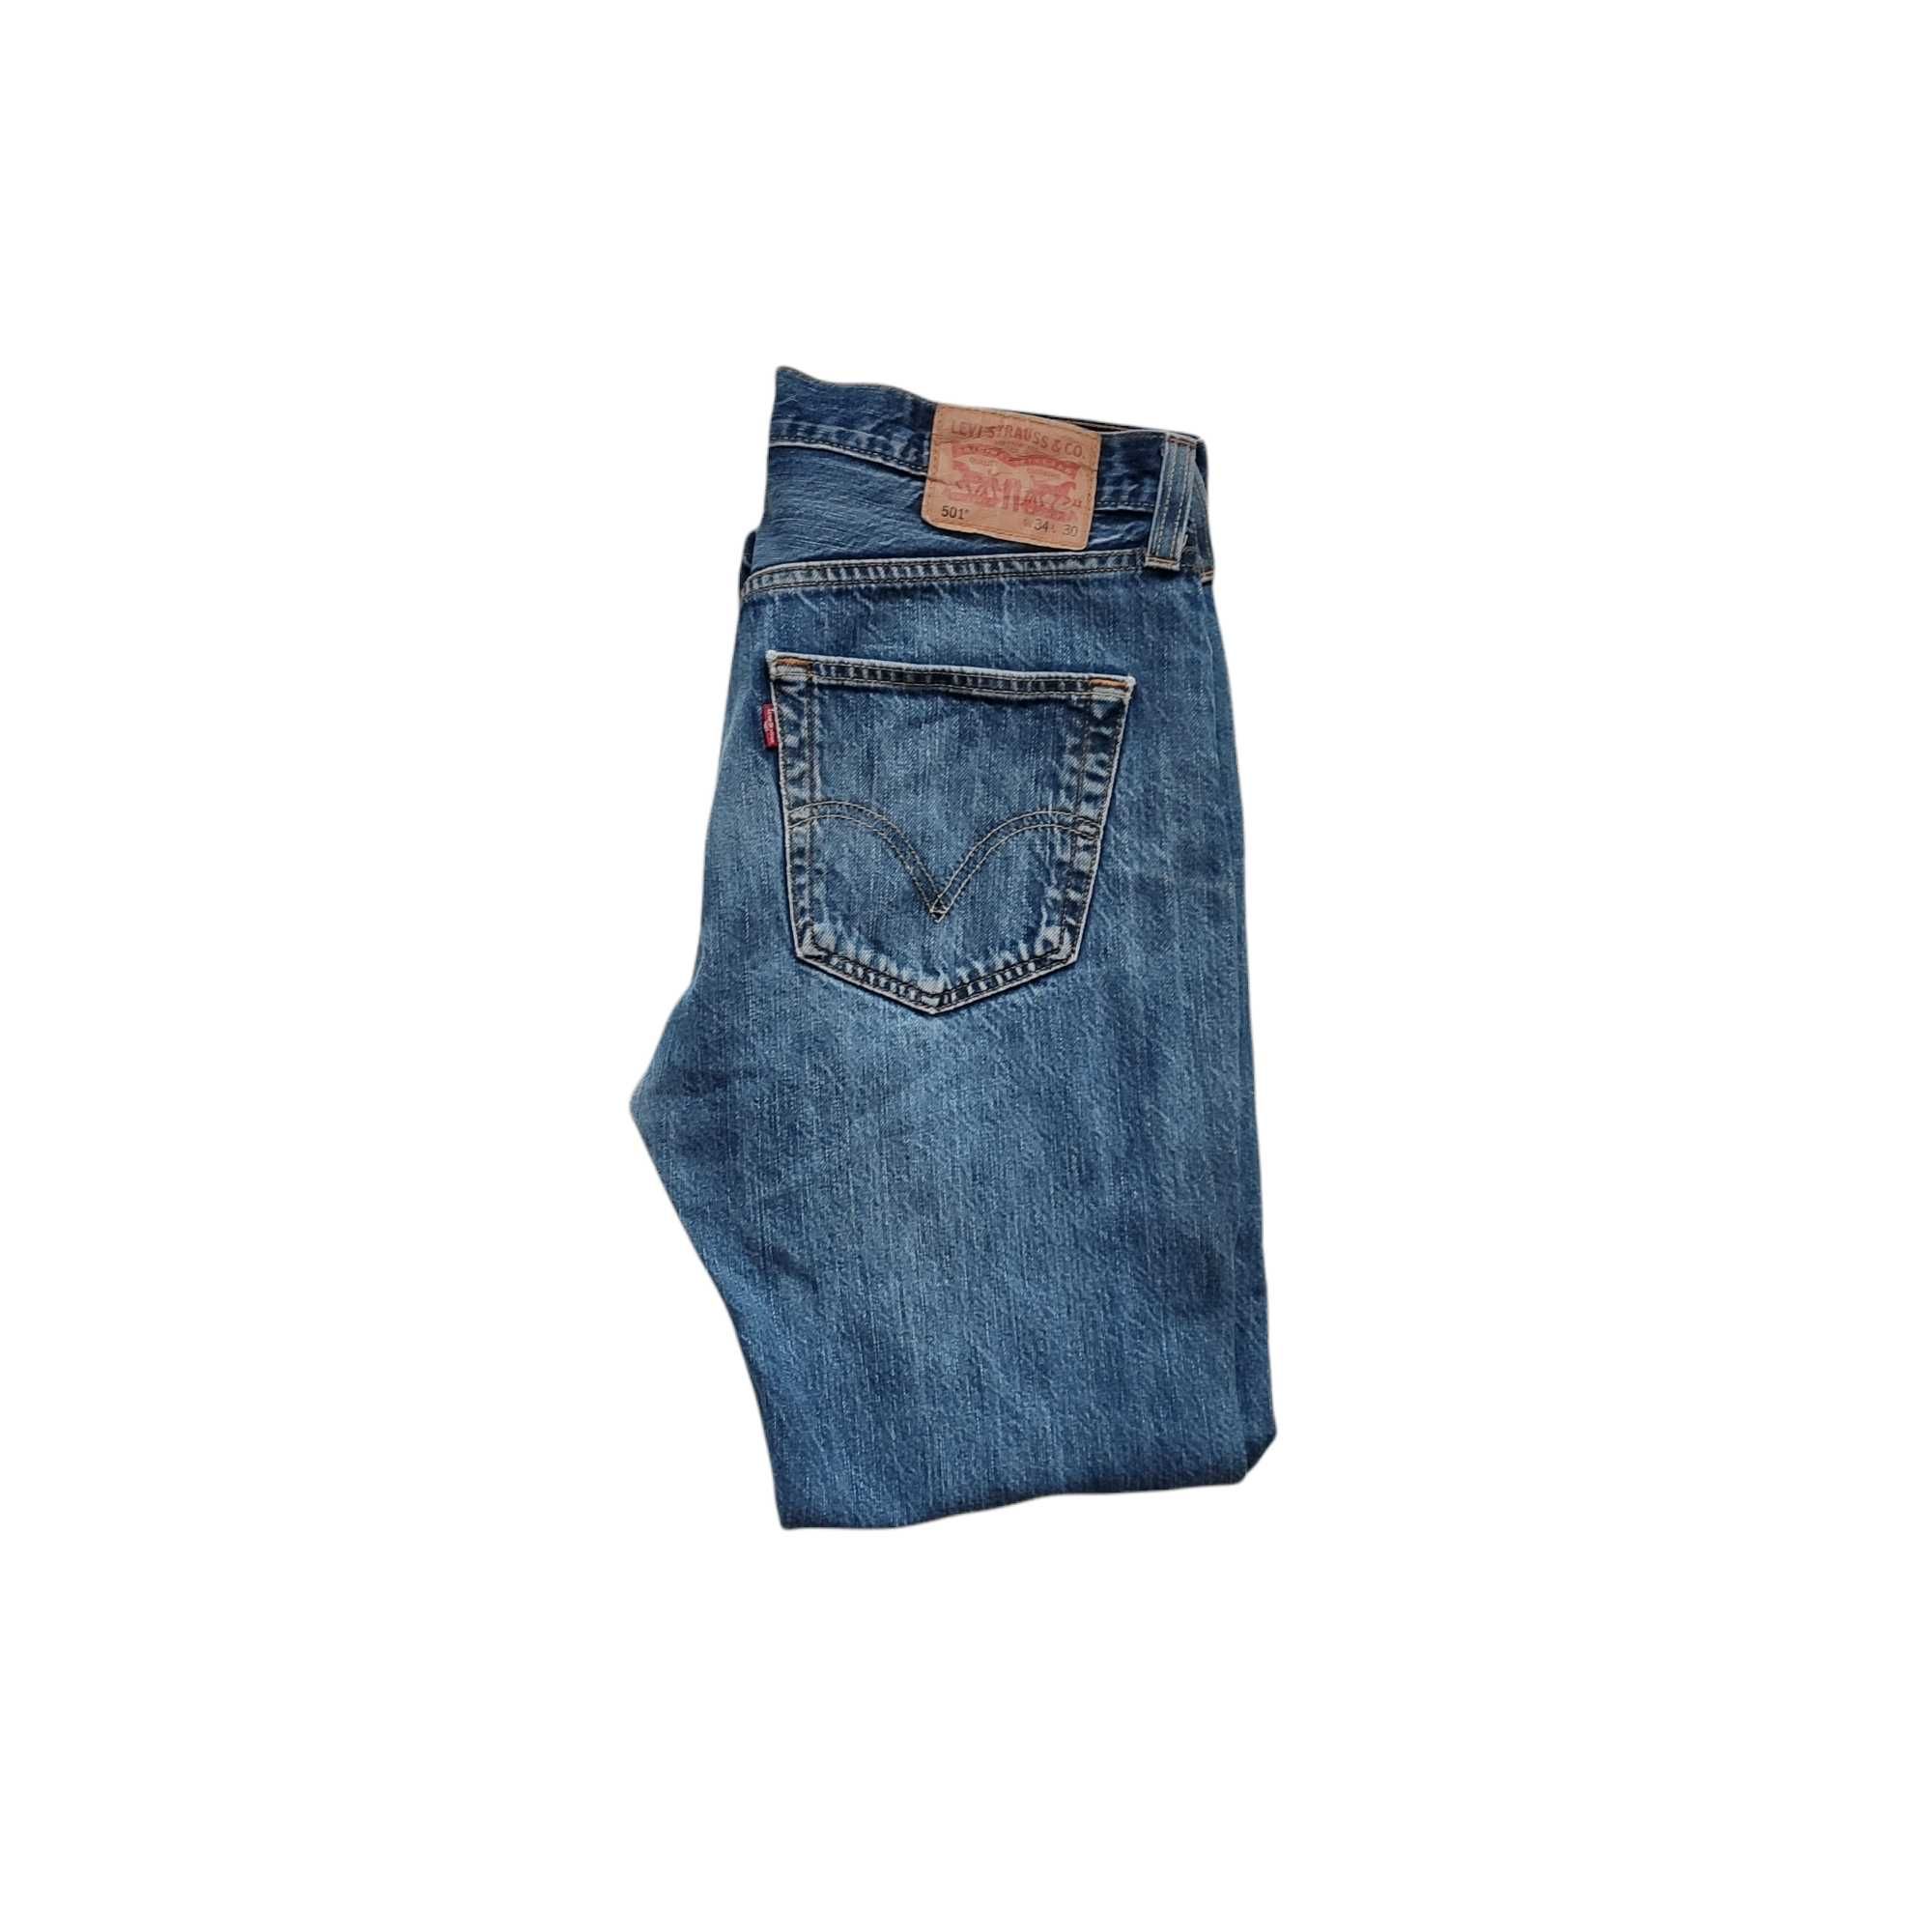 Levi's 501 W34/L30, spodnie jeansowe, stan bardzo dobry